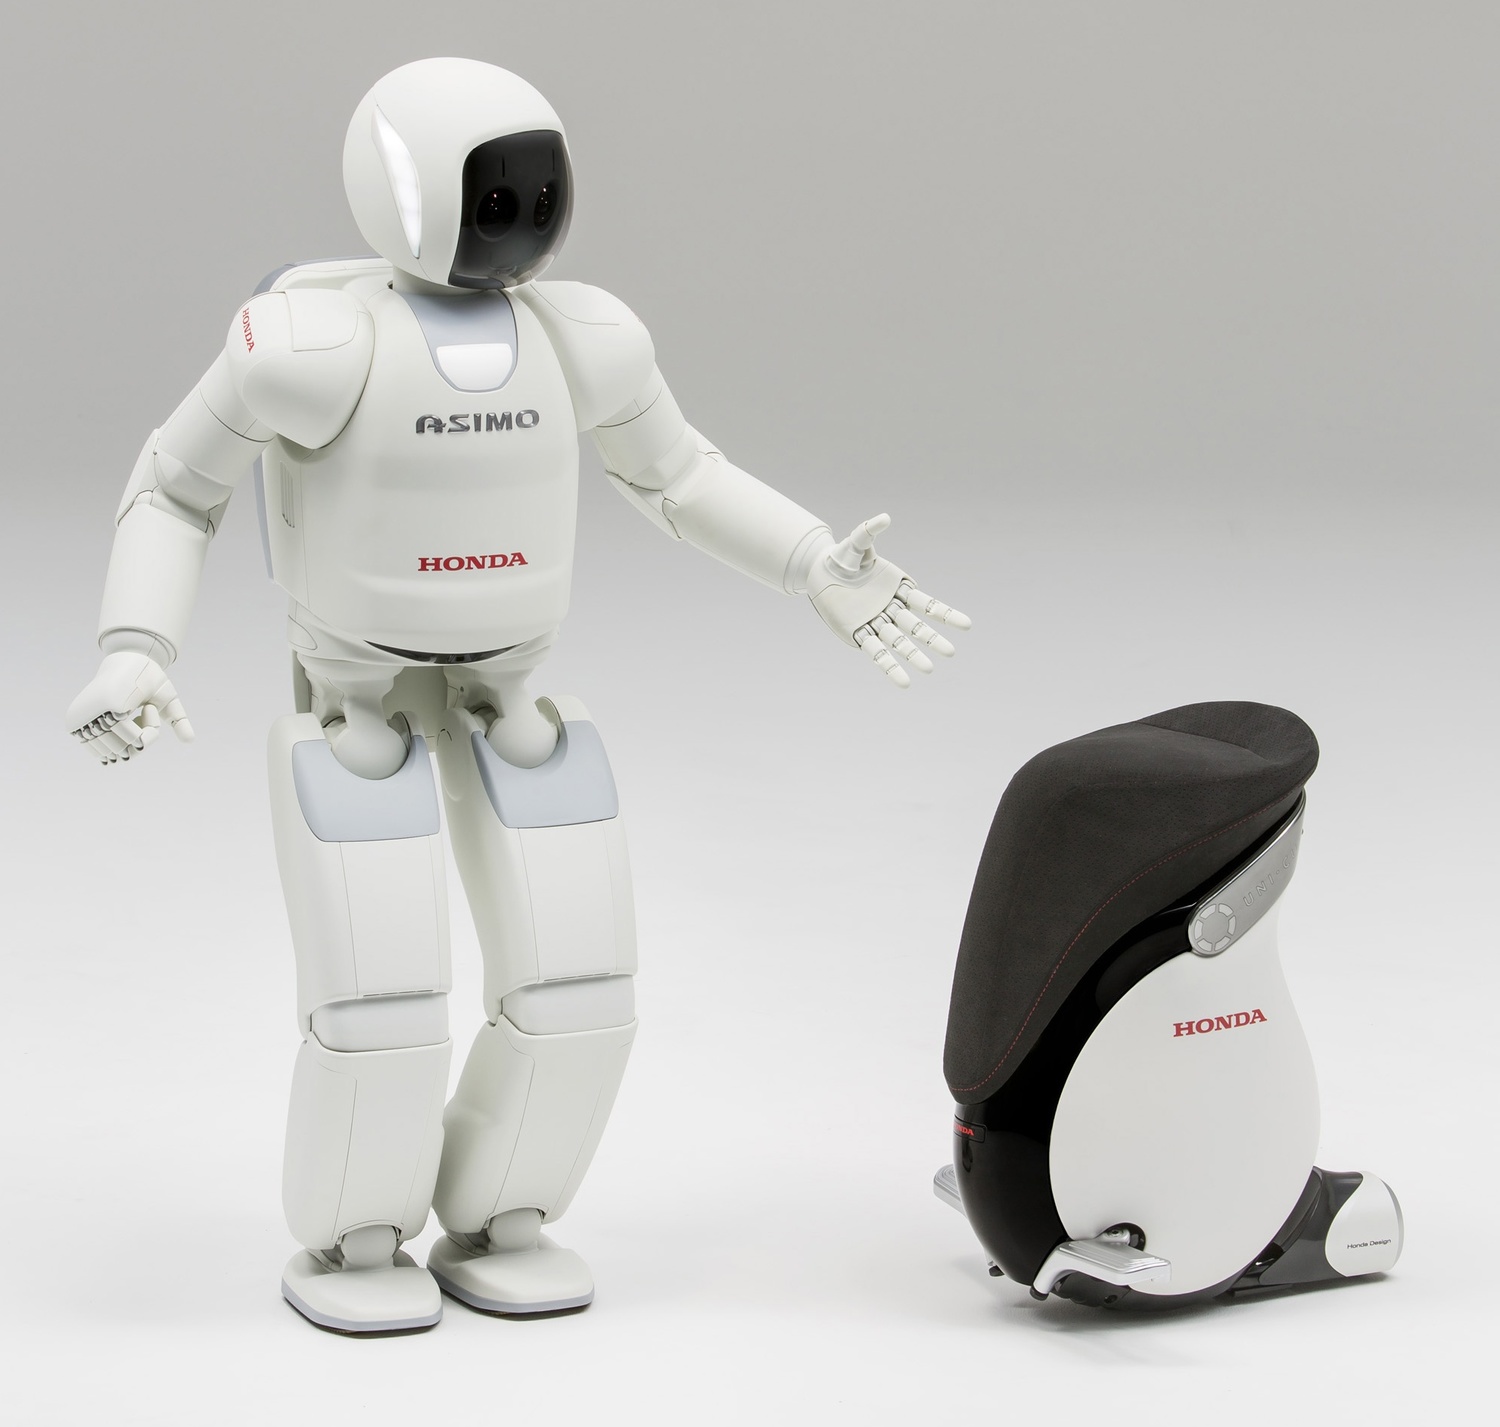 ホンダの開発したパーソナルモビリティ「UNI-CAB」にも、ASIMOで培ったバランス制御技術や遠隔操作技術などが活かされている